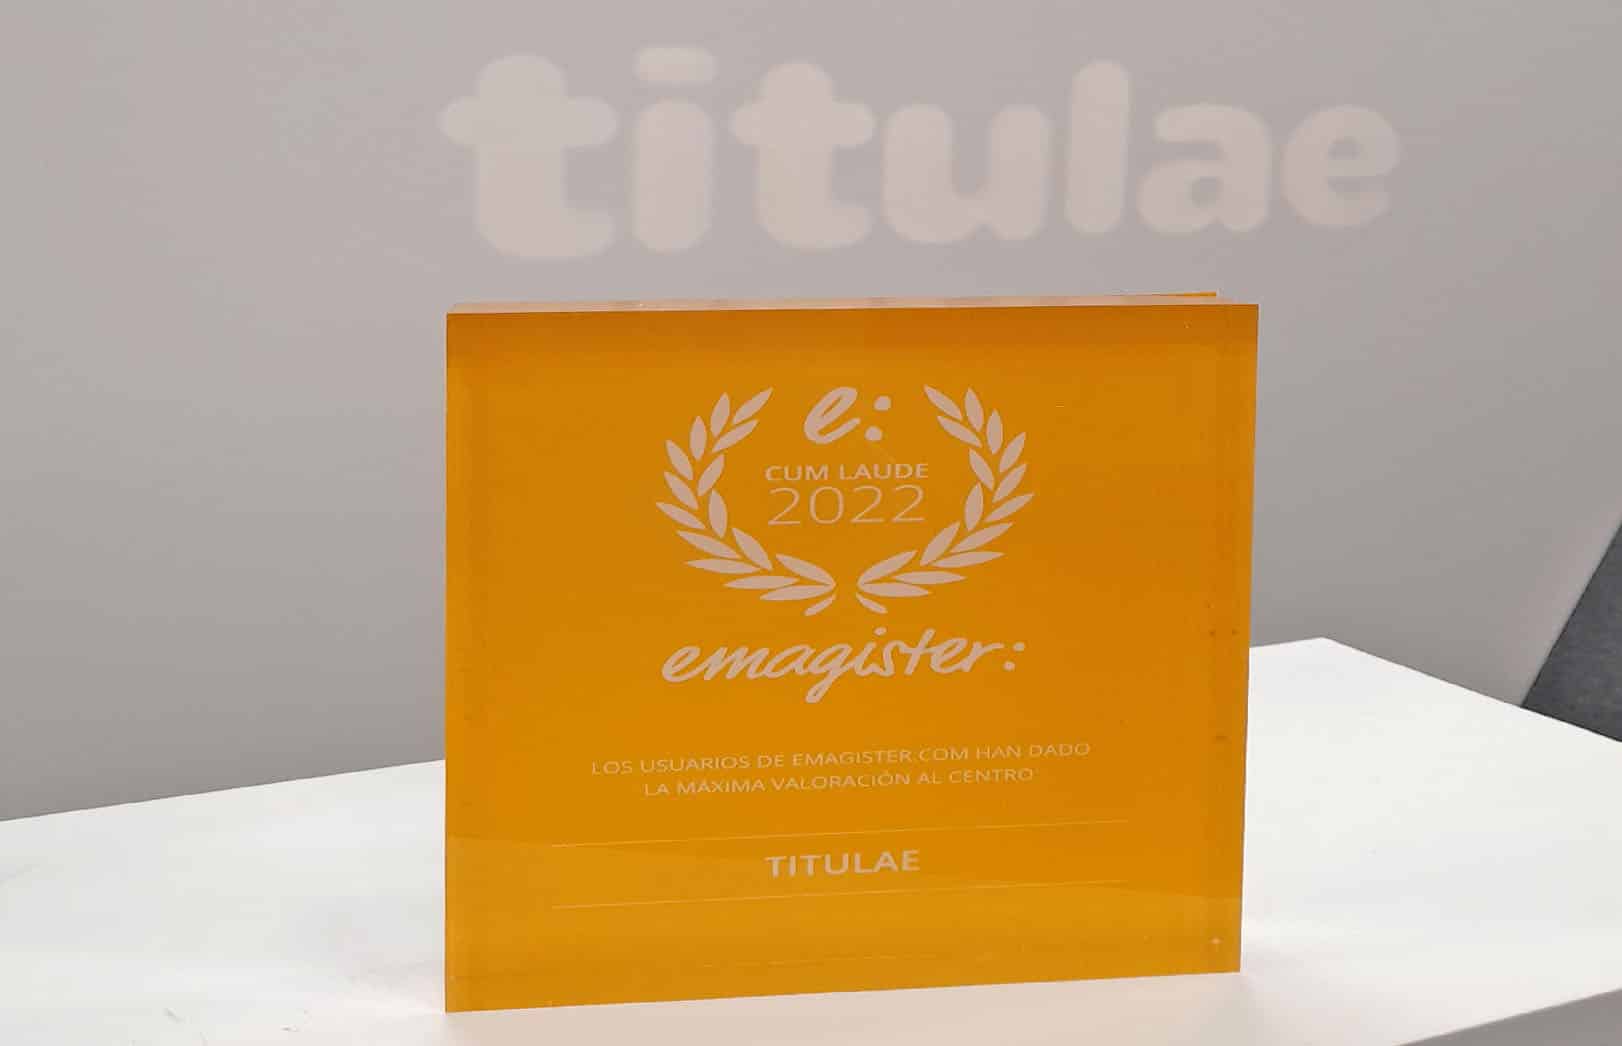 Titulae sello cum laude 2022 de Emagister